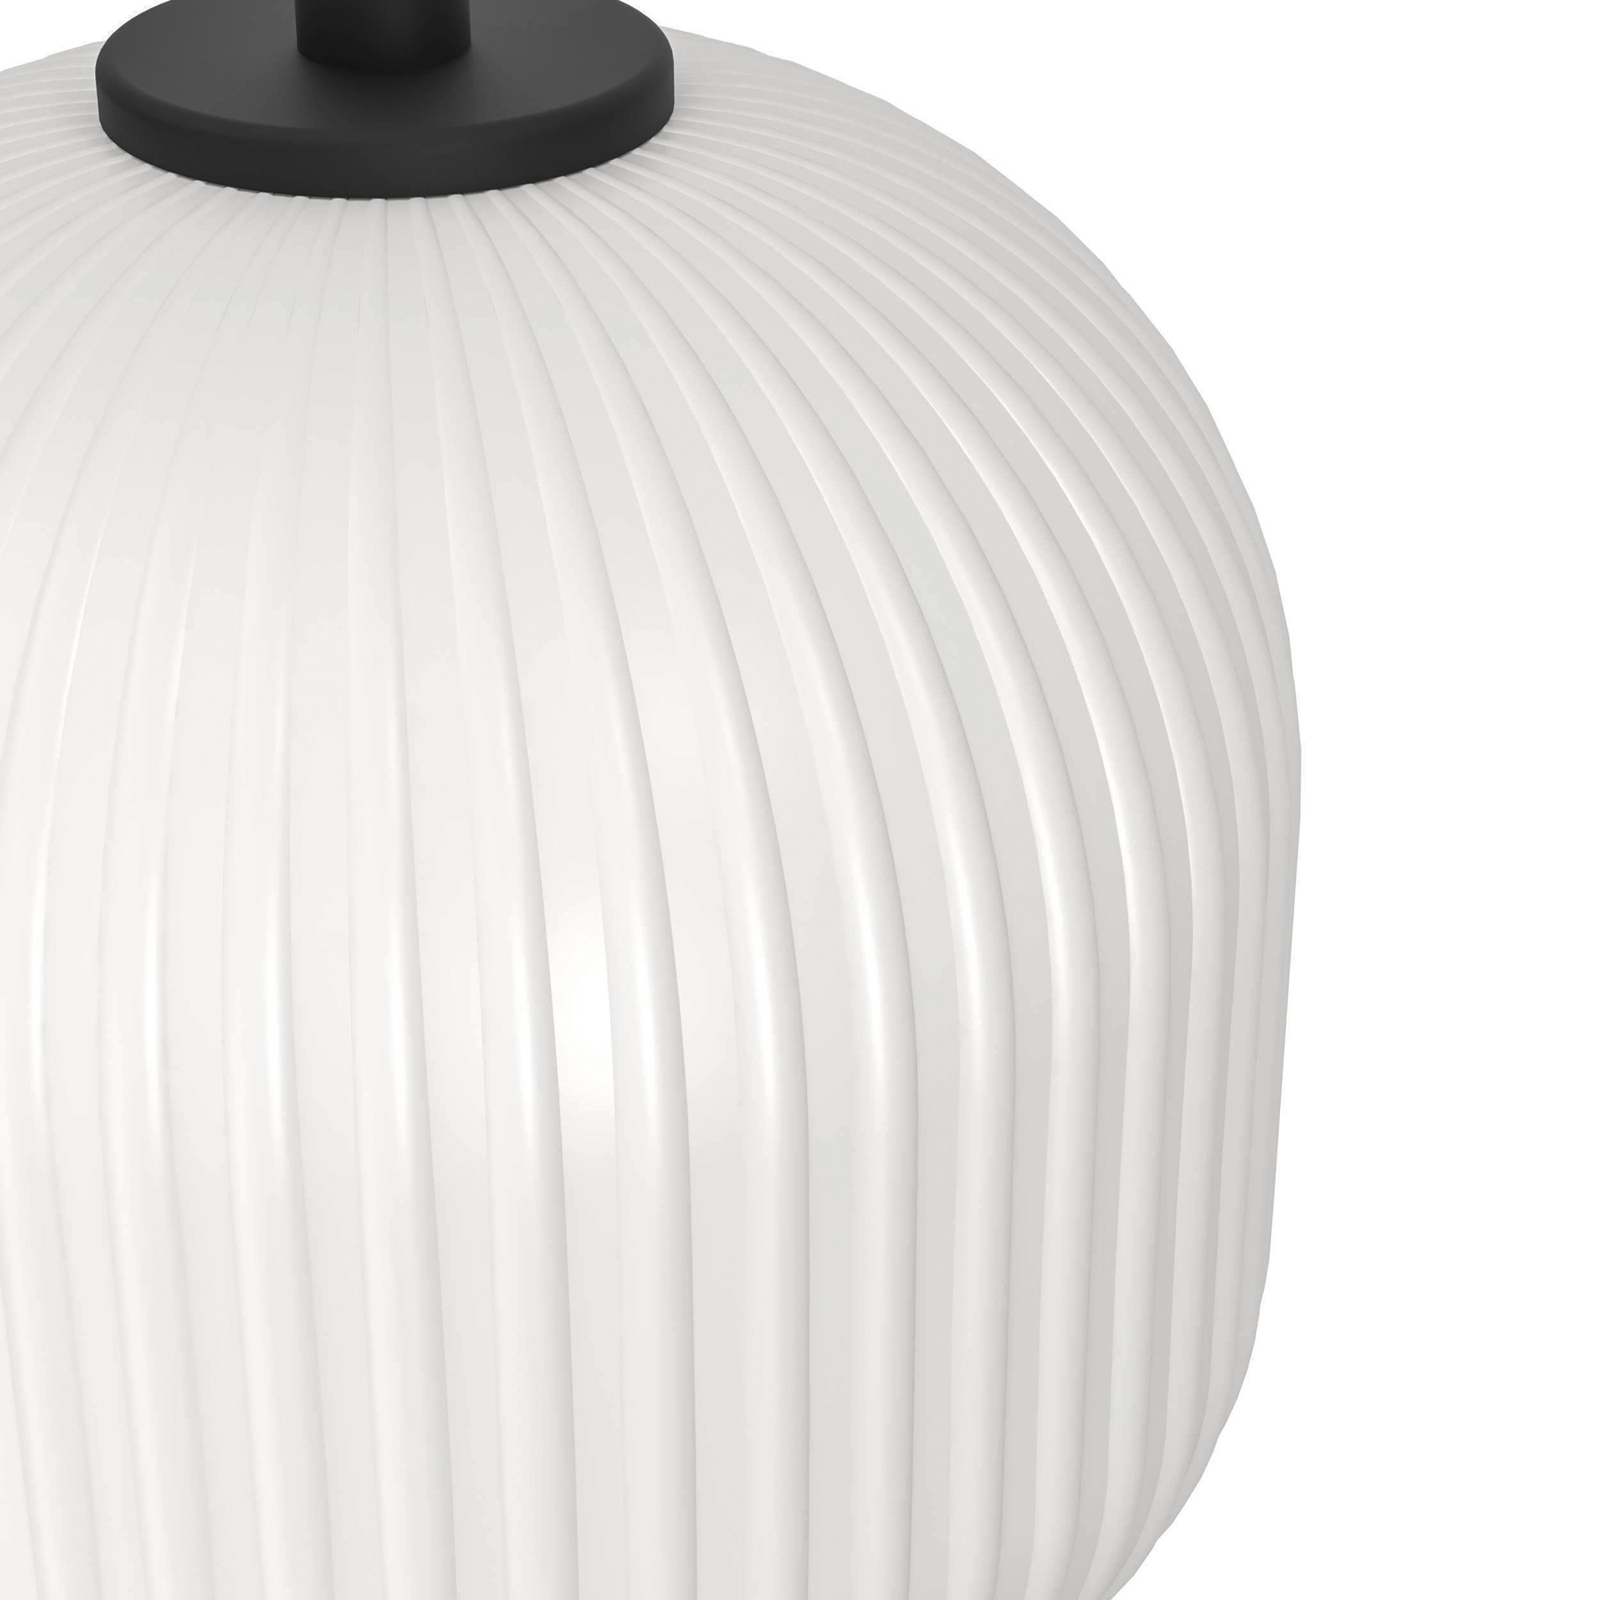 Mantunalle hængelampe, Ø 62 cm, sort/hvid, 3 lyskilder.